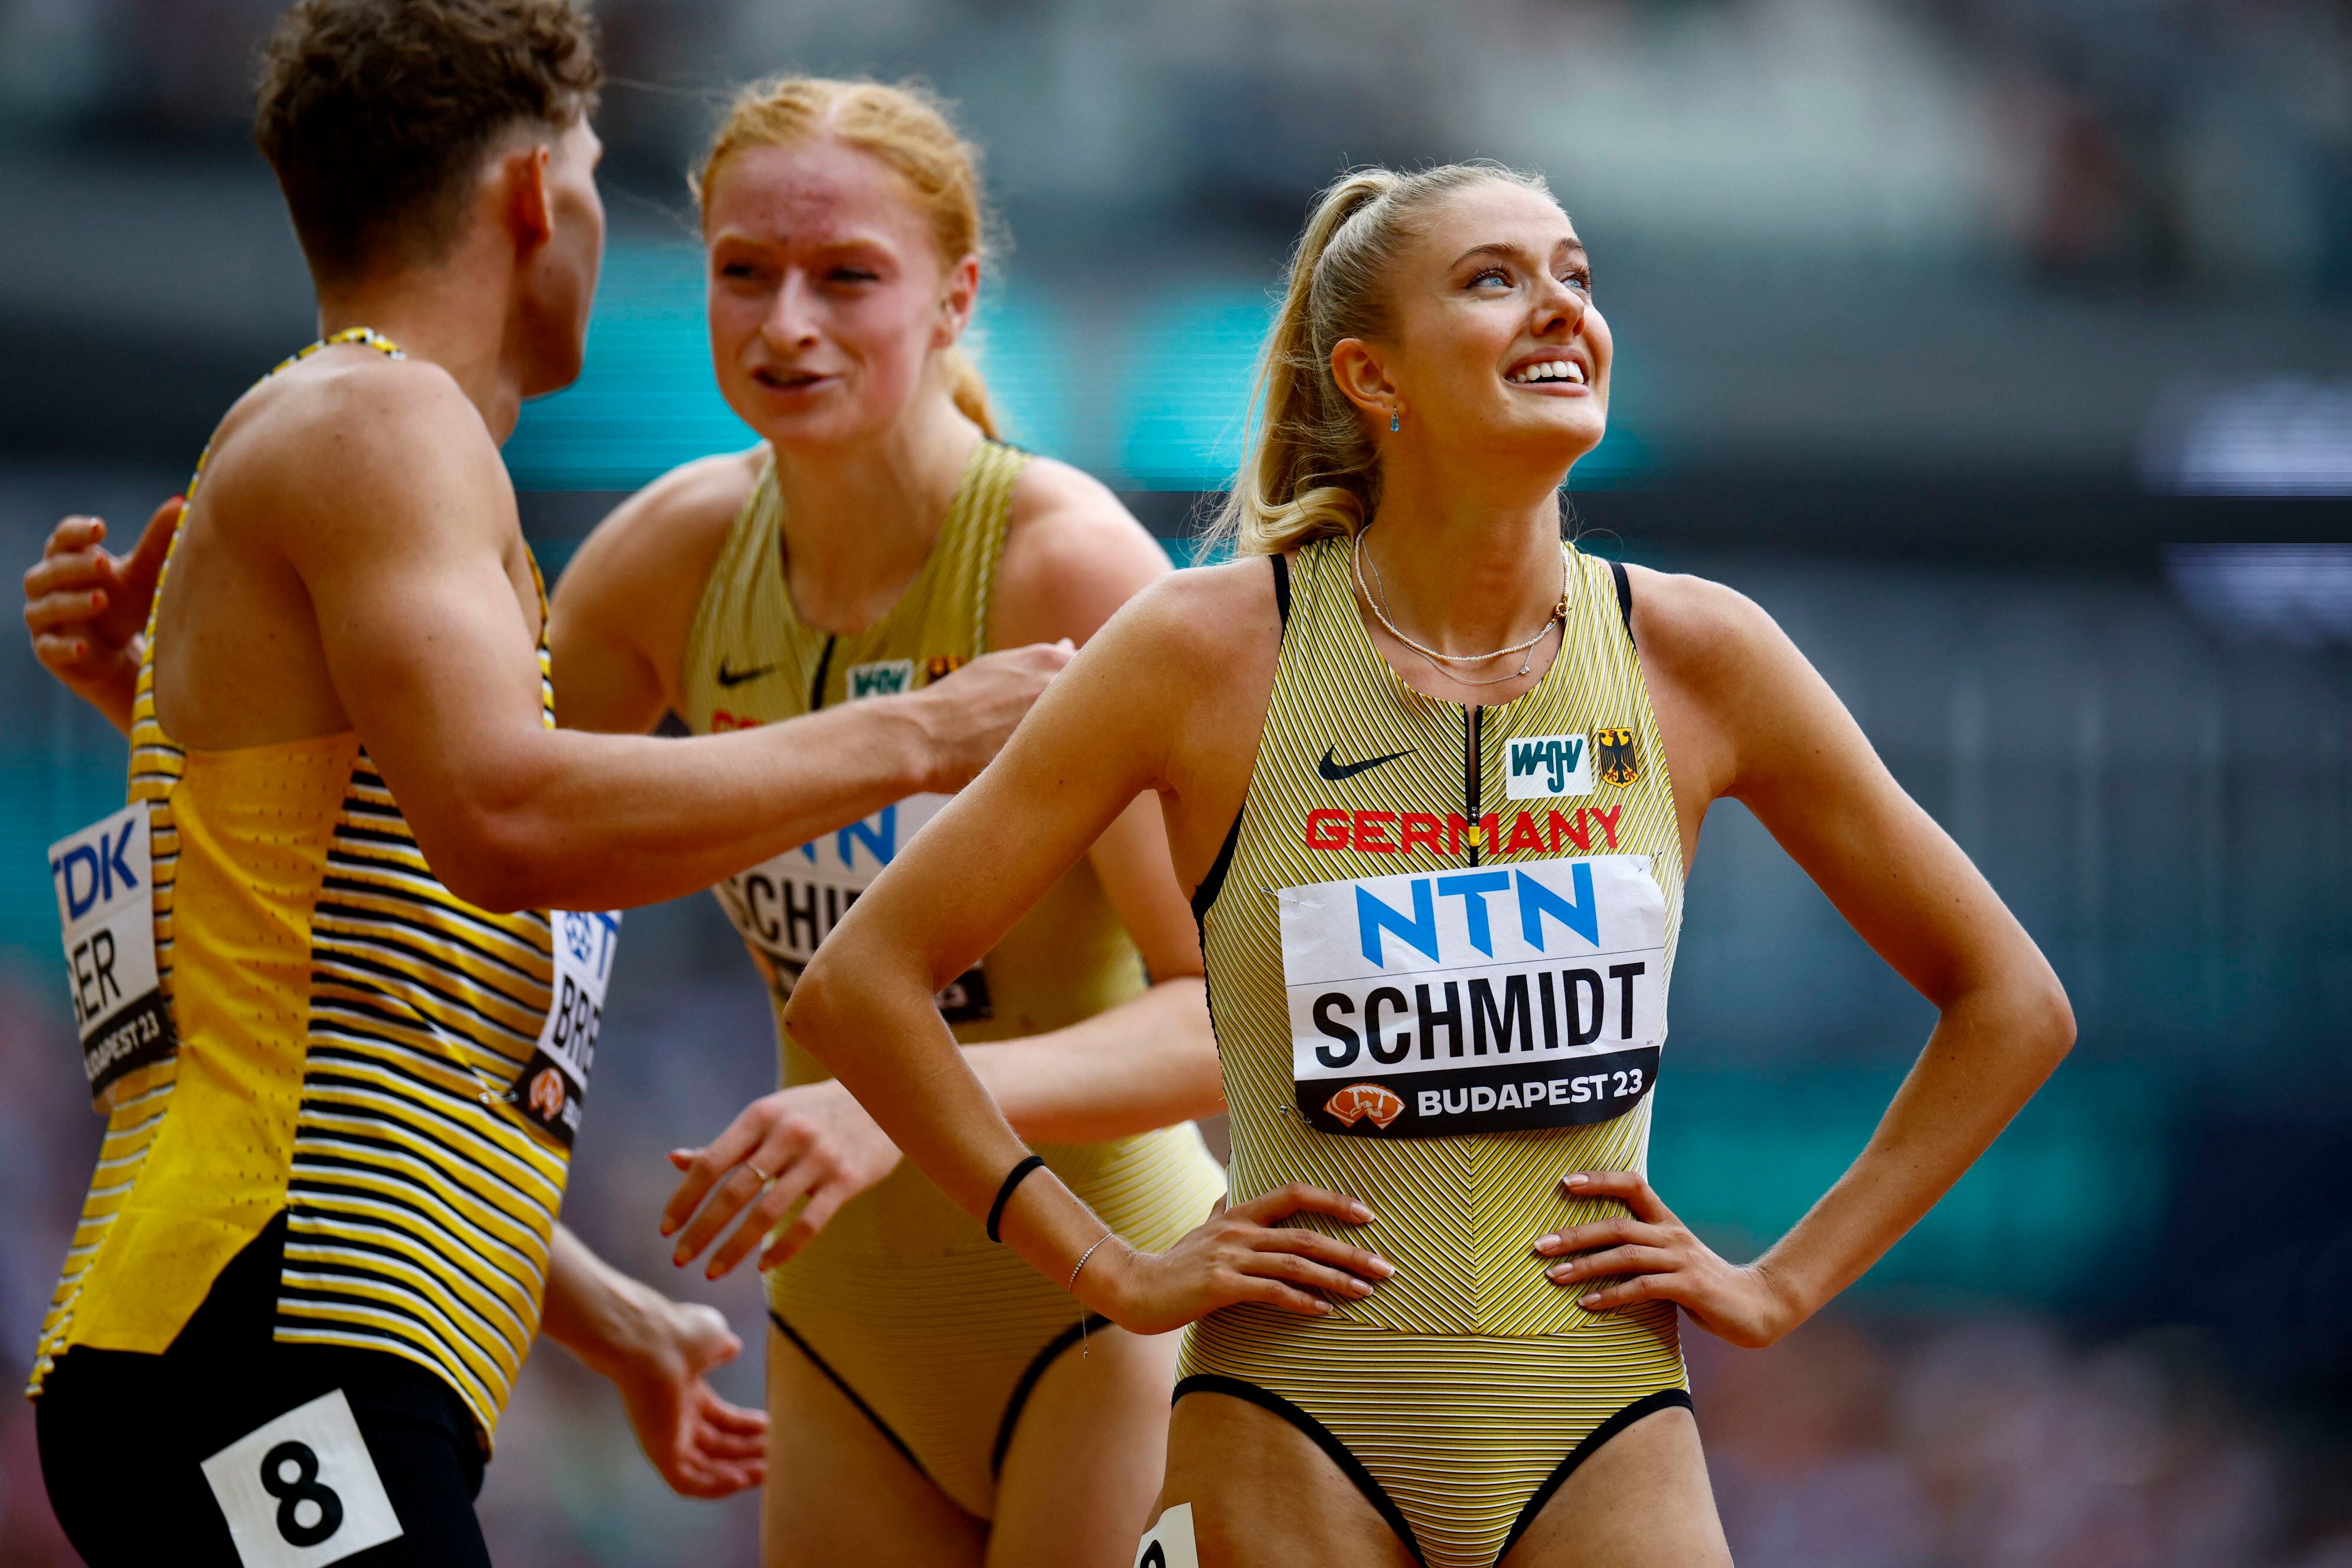 El equipo alemán aseguró su lugar en el relevo mixto 4x400 metros con una brillante actuación en Bahamas. (REUTERS/Sarah Meyssonnier)